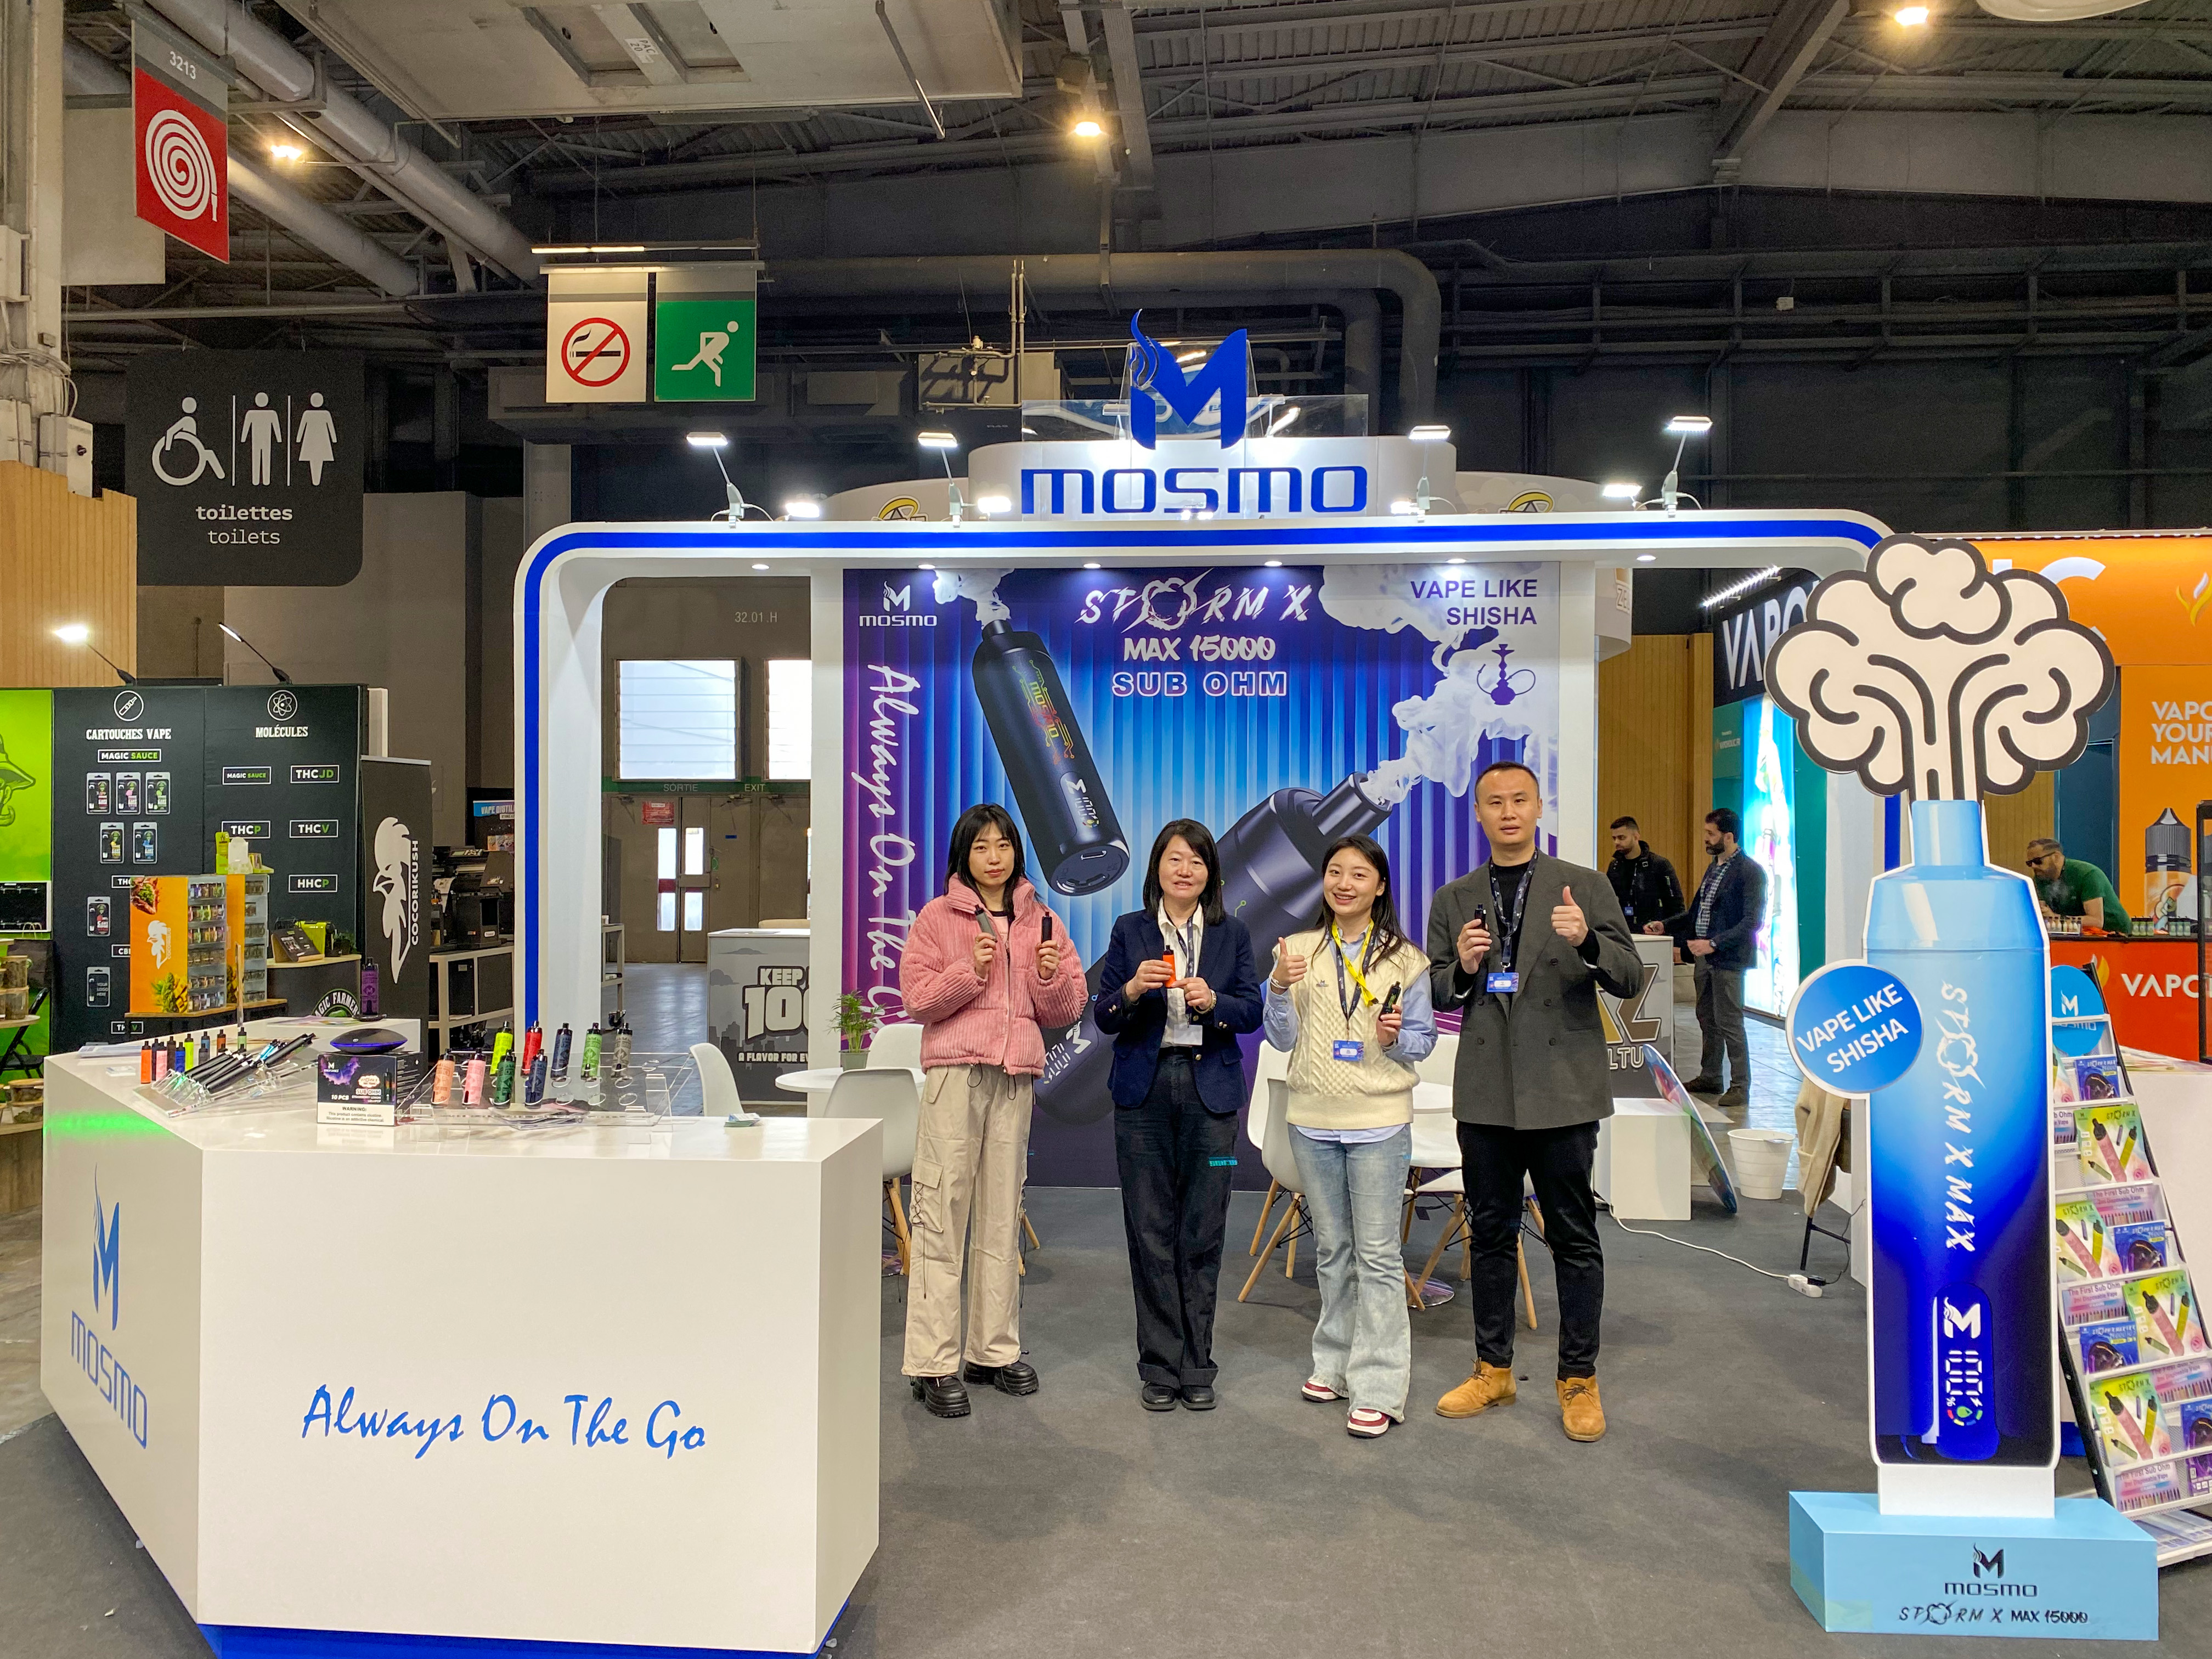 MOSMO glänzt auf der French Vape Expo, drei neue Produkte ziehen die Aufmerksamkeit auf sich